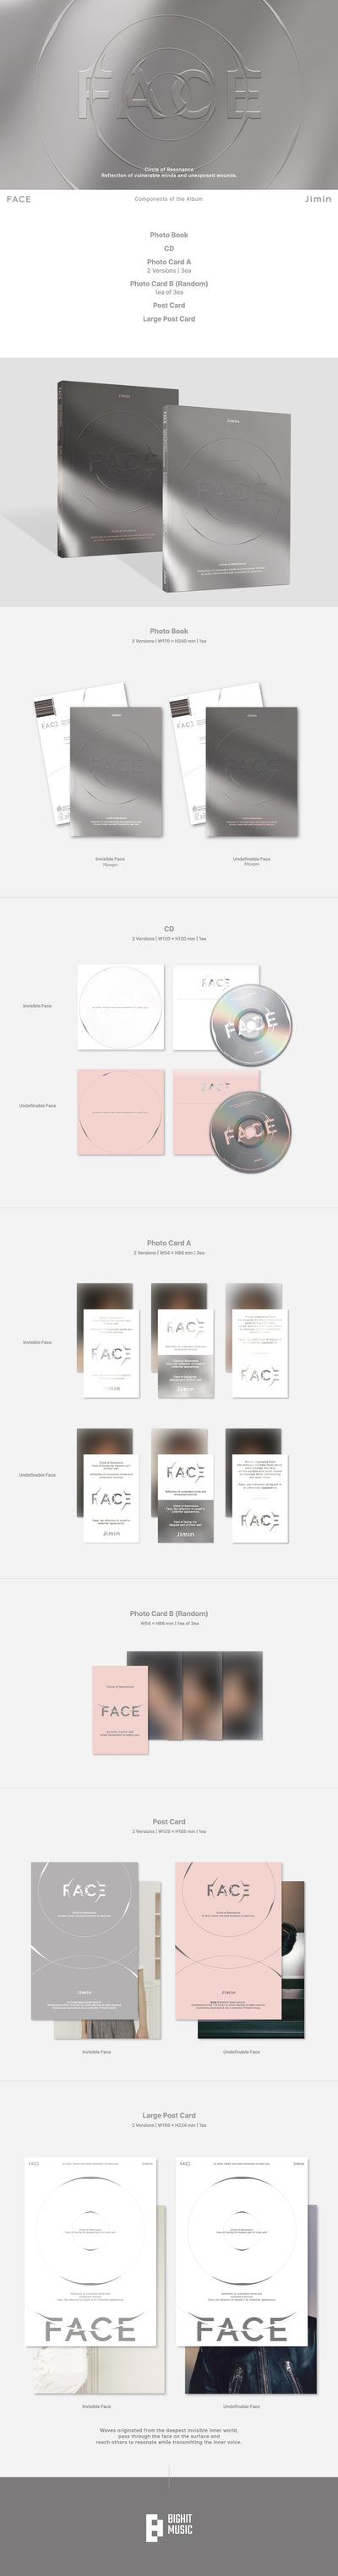 JIMIN (BTS) 'FACE' (2 forms set)